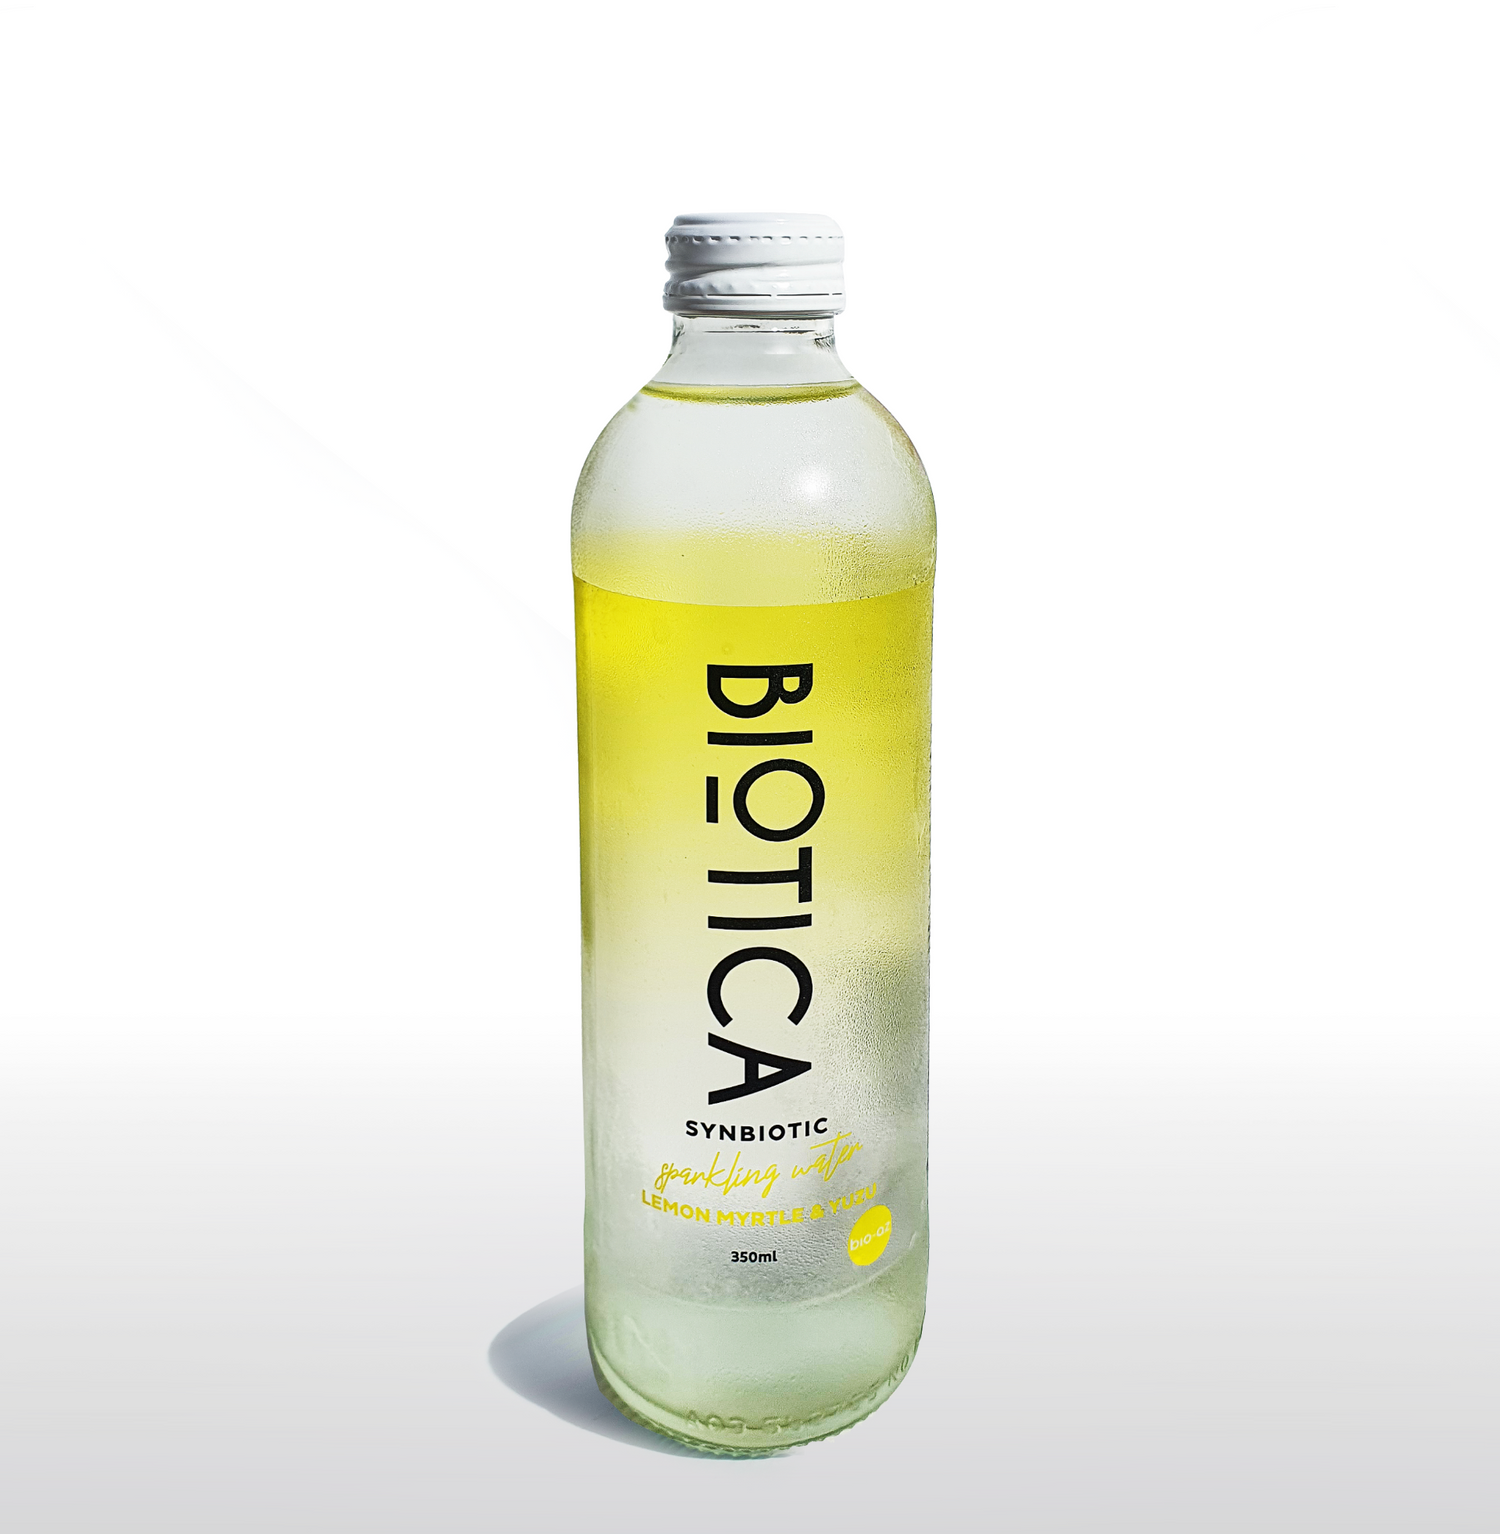 Lemon Myrtle and Yuzu Biotica Synbiotic Sparkling Water Glass Bottle (350ml x 12)